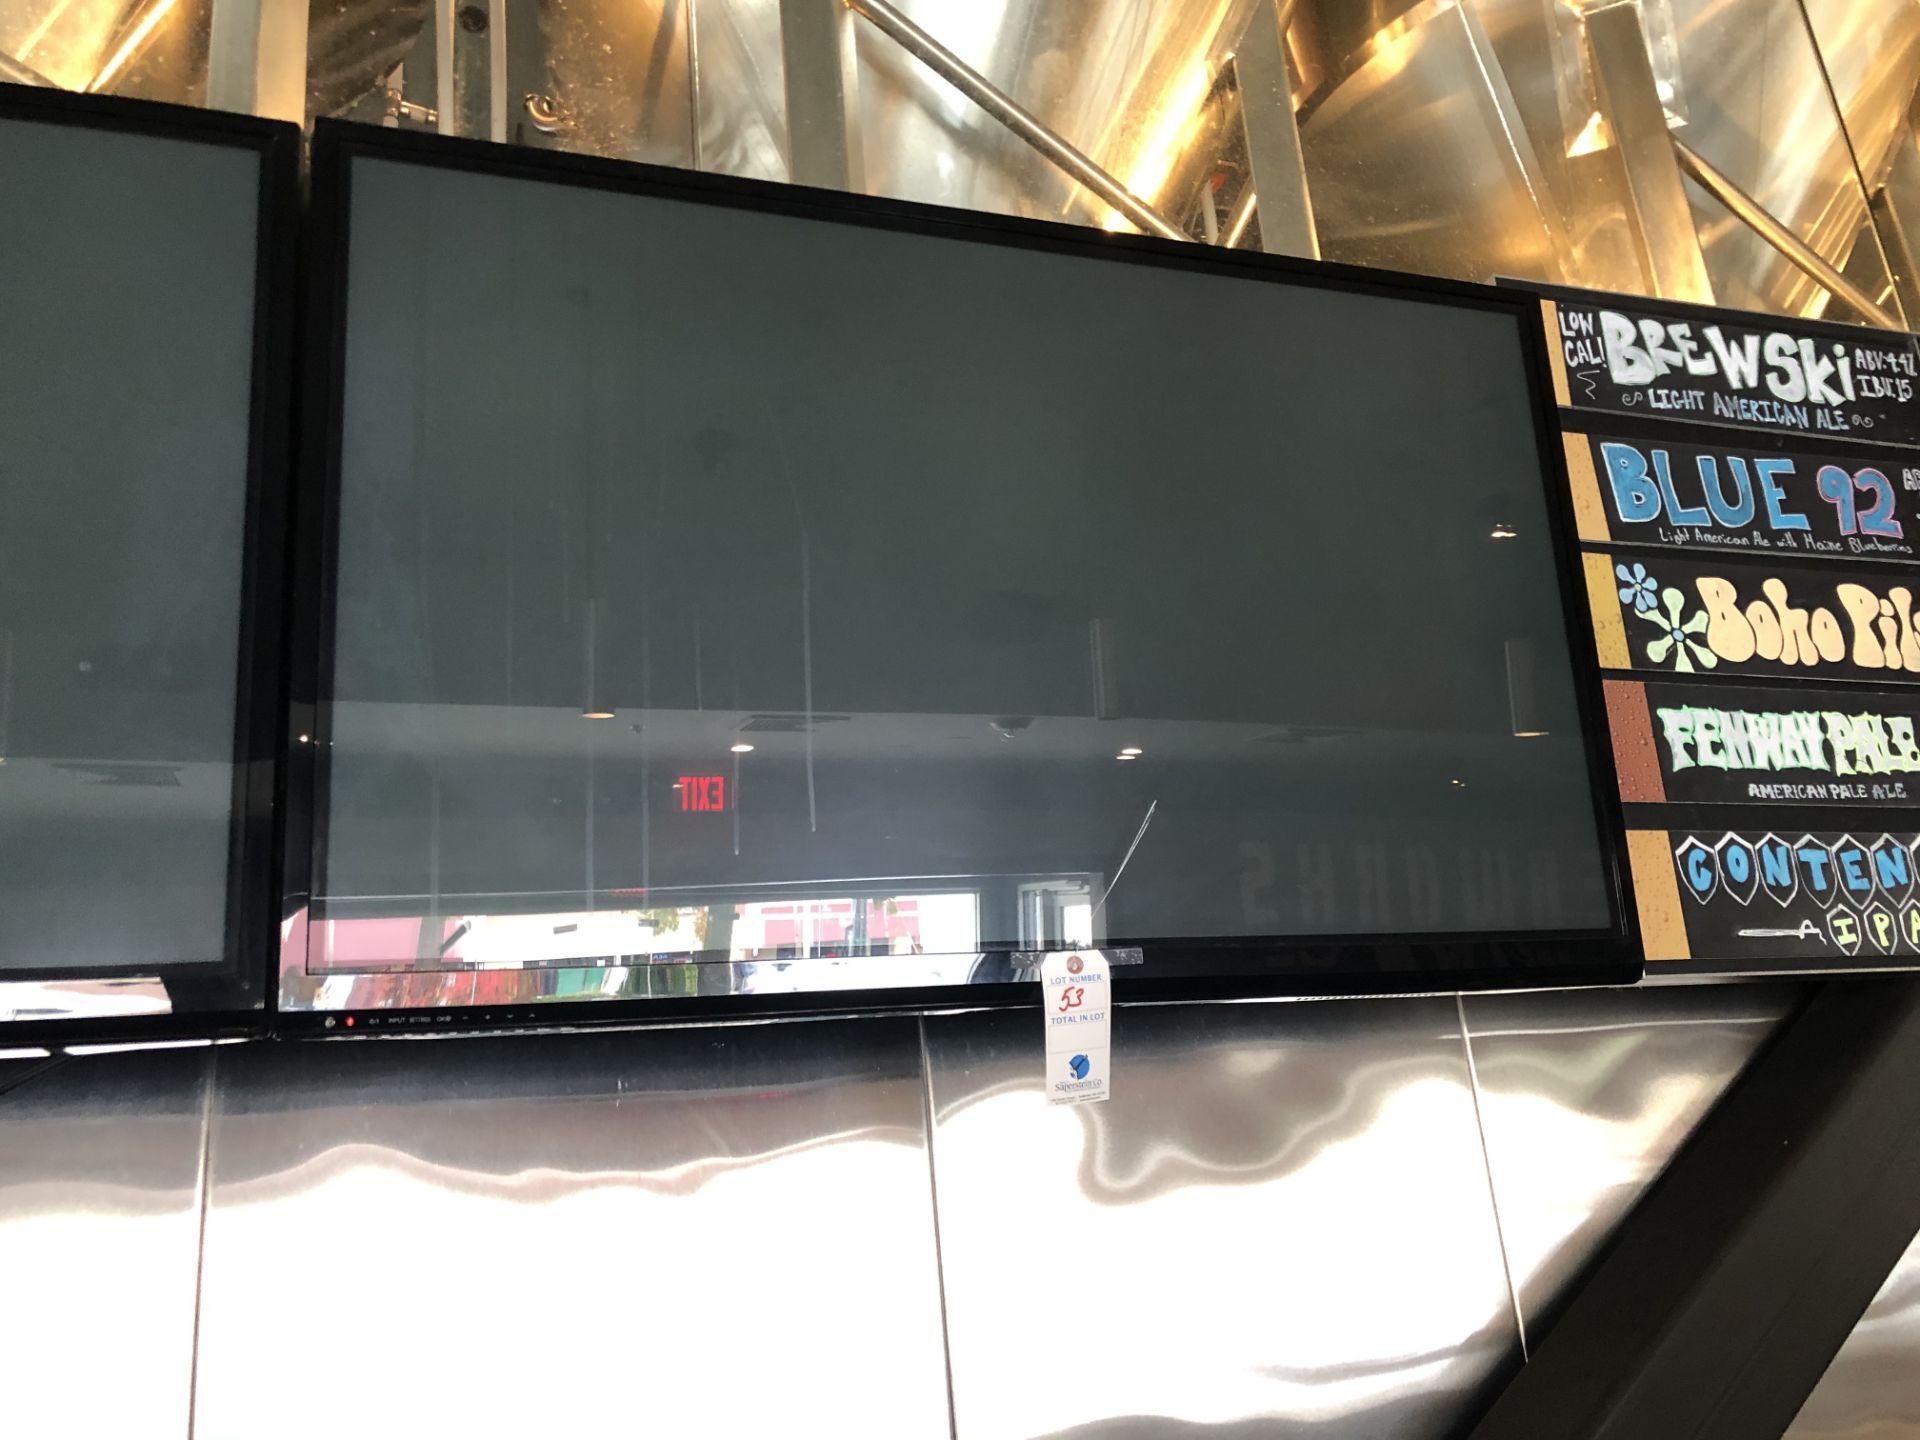 LG 52" Wall Mounted Flat Panel TV